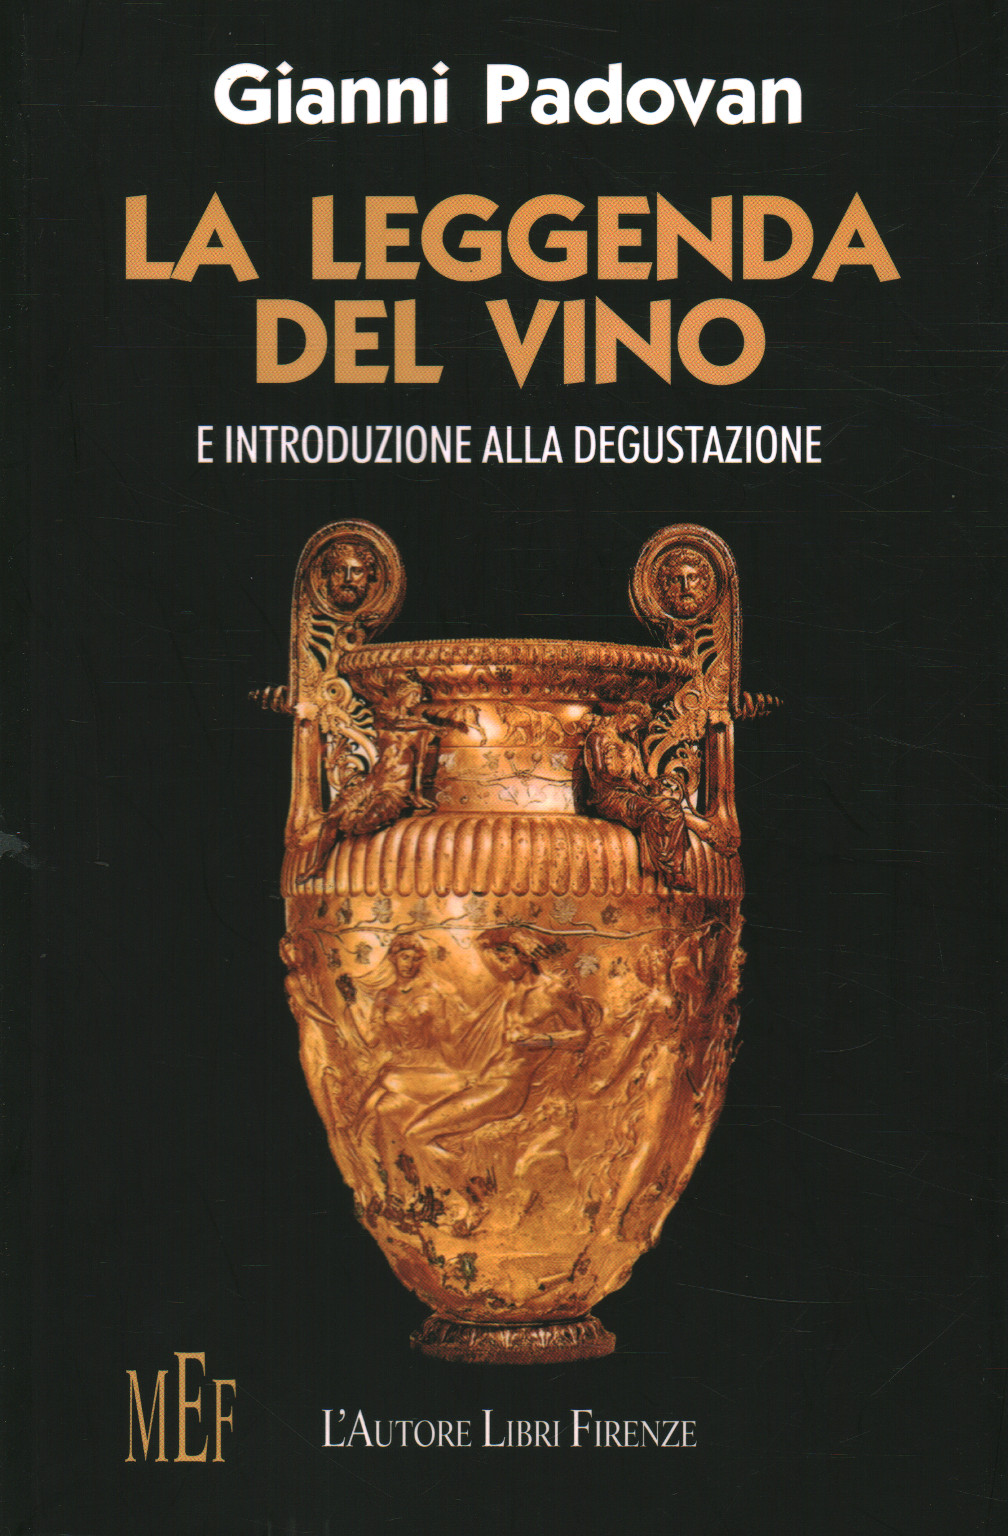 La leggenda del vino e introduzione alla degustazi, Gianni Padovan